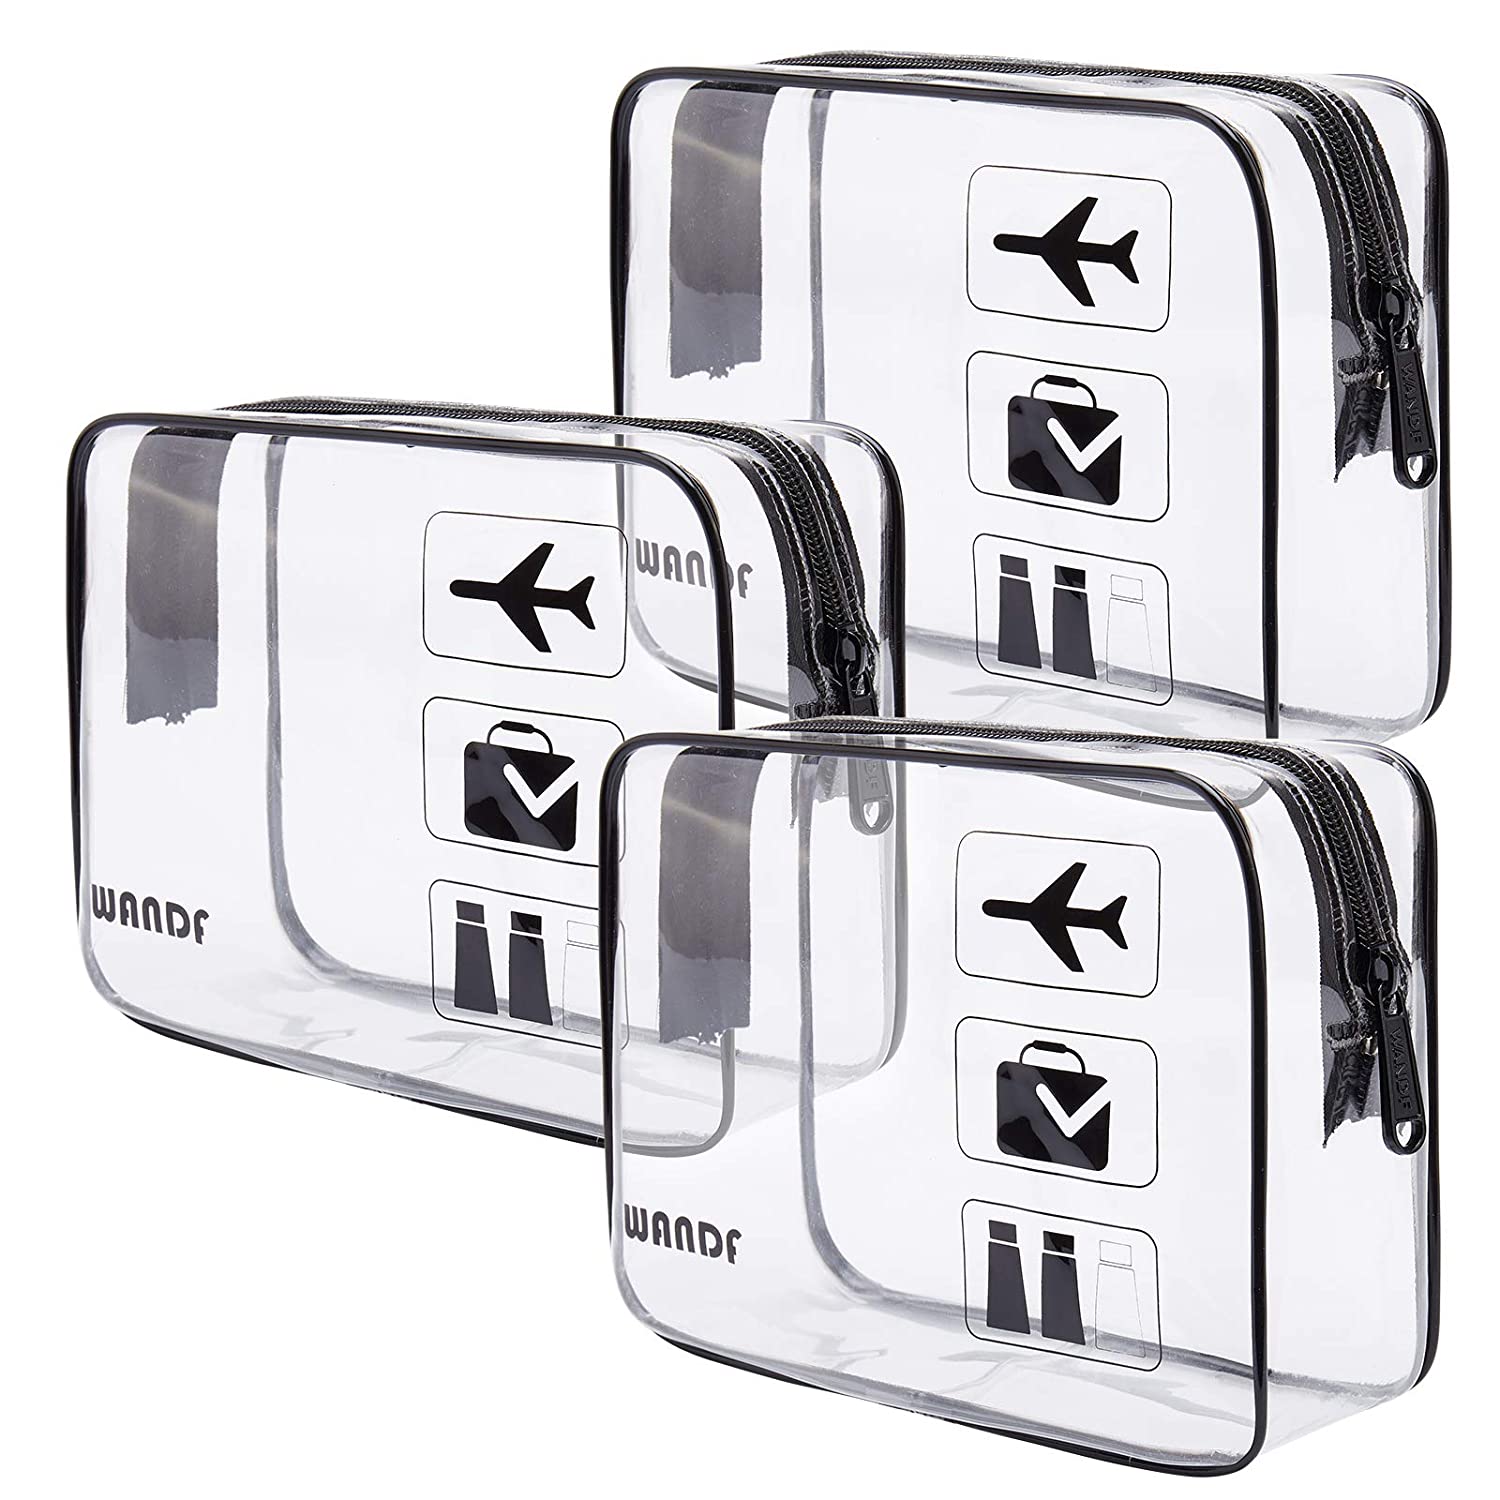 15 Best Clear Toiletry Bags: TSA-Compliant Styles & More – WWD